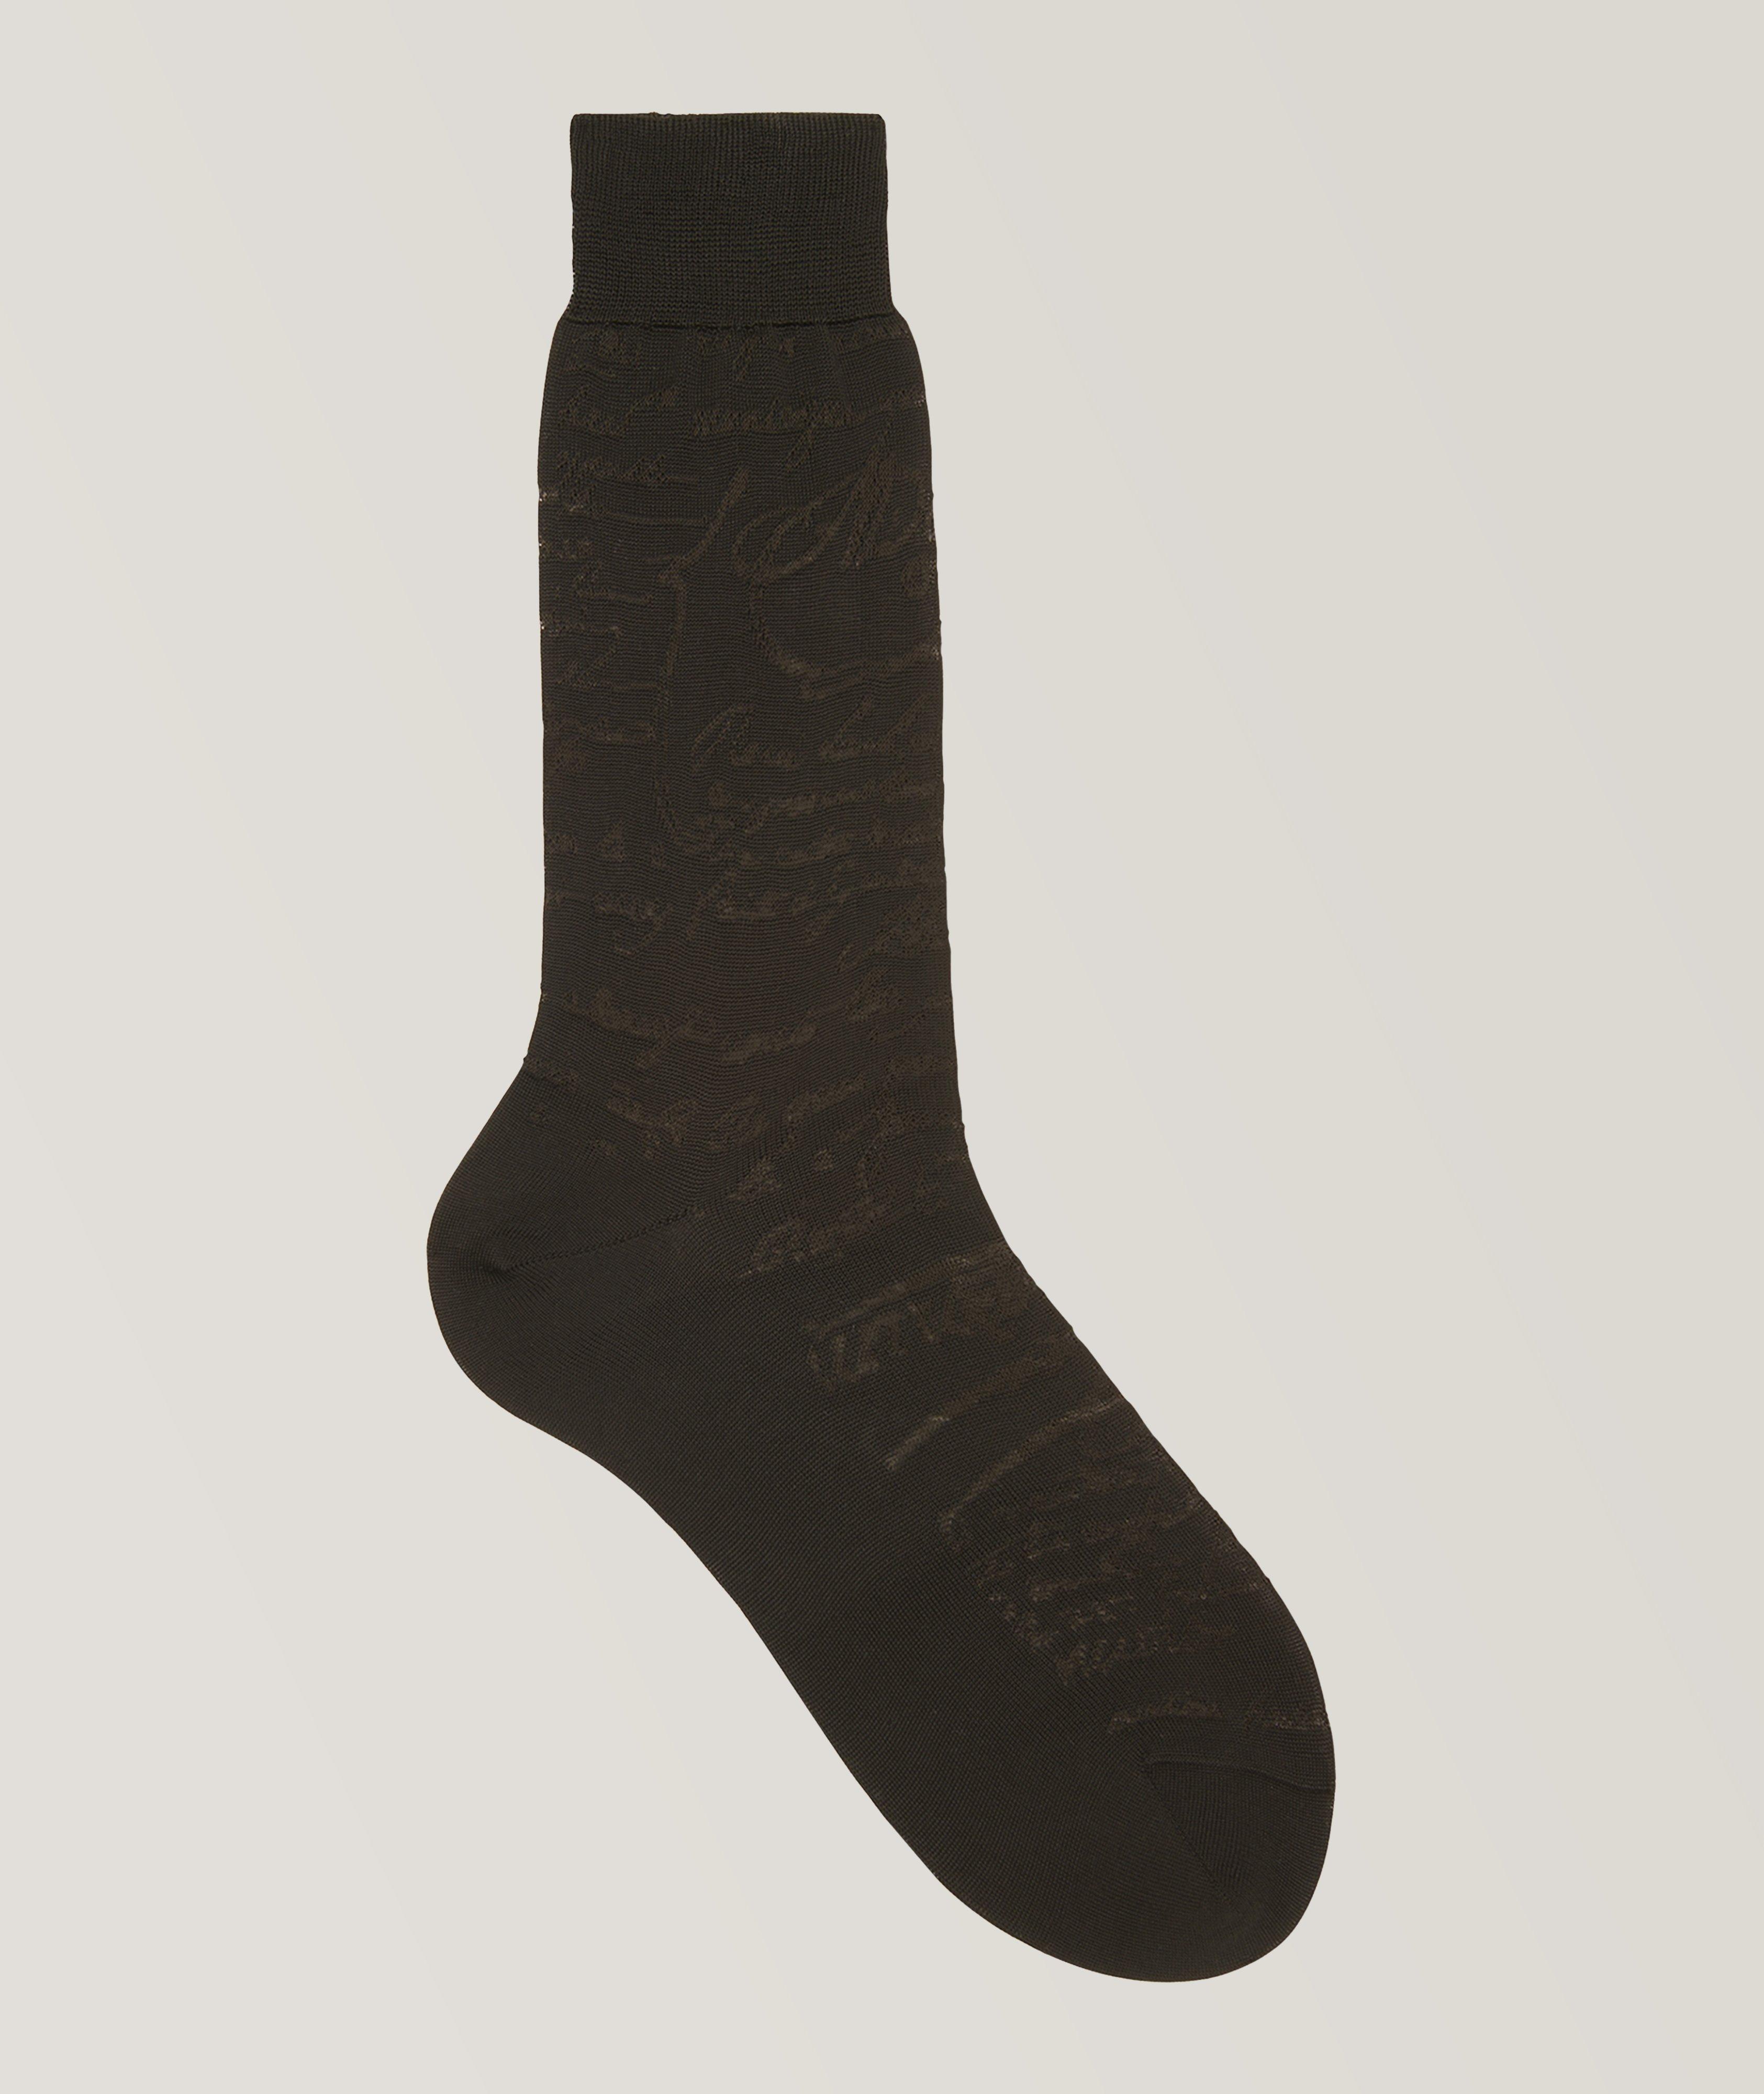 Cotton Scritto Socks image 0